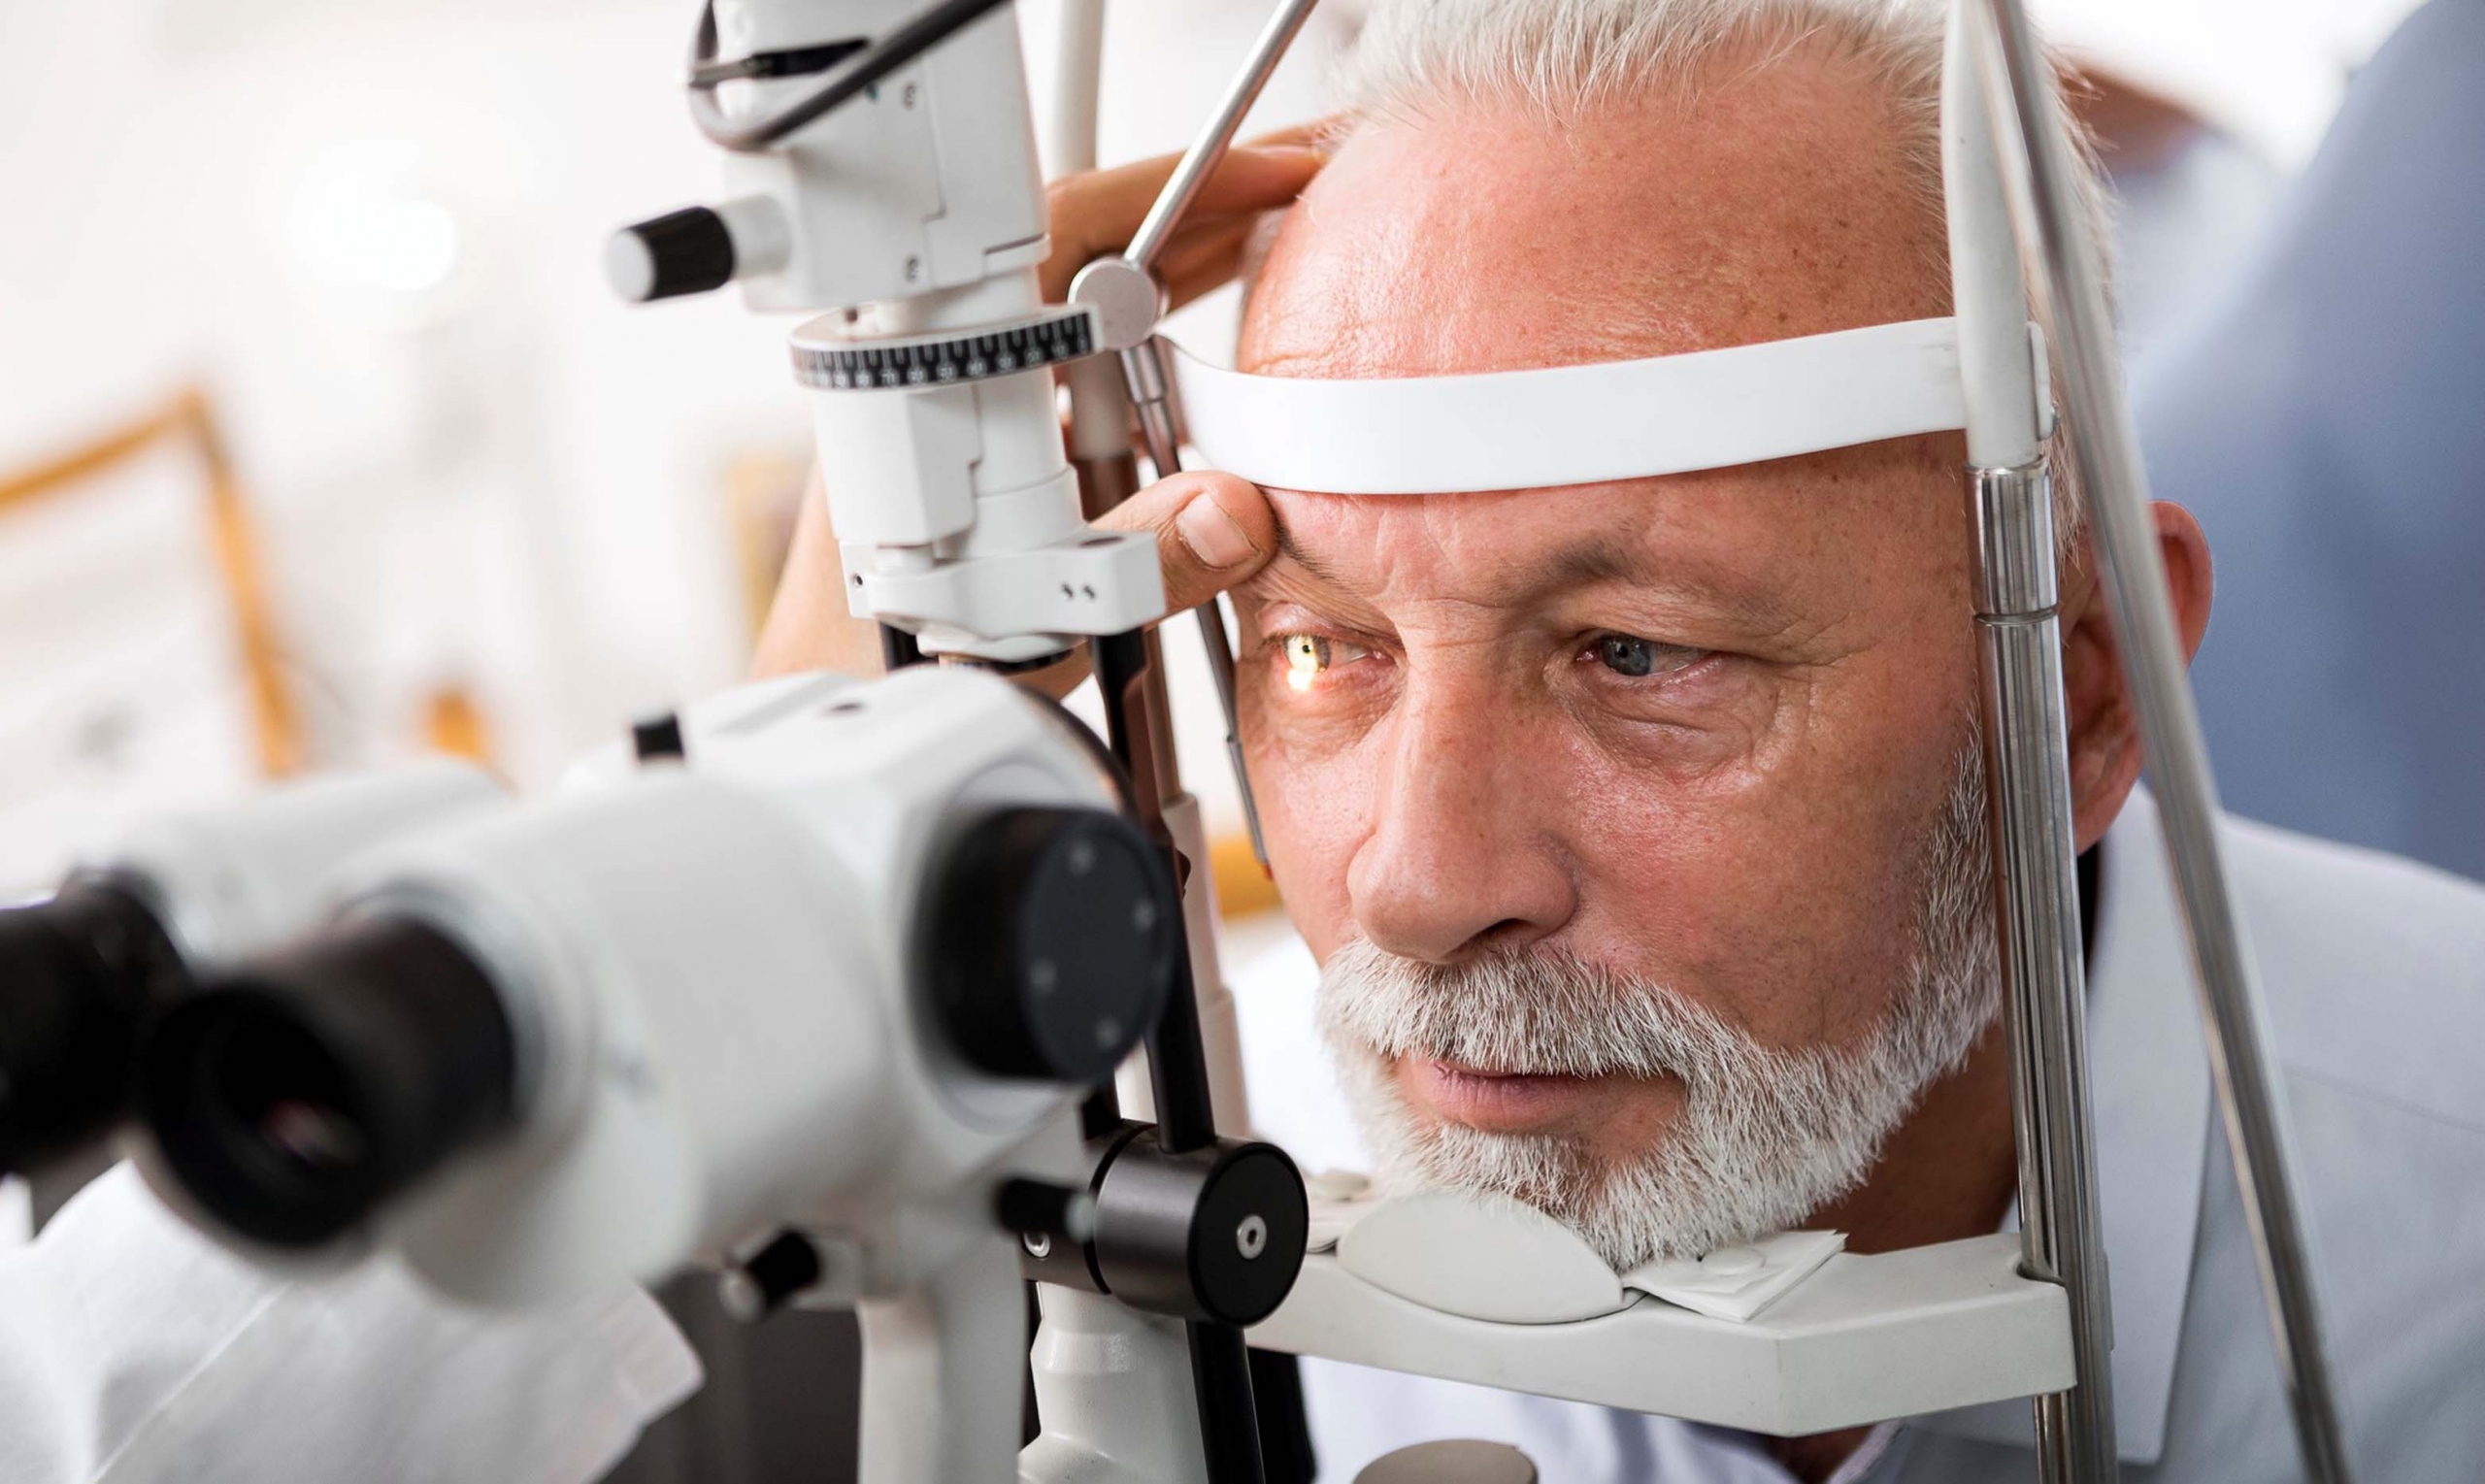 Man having eye exam